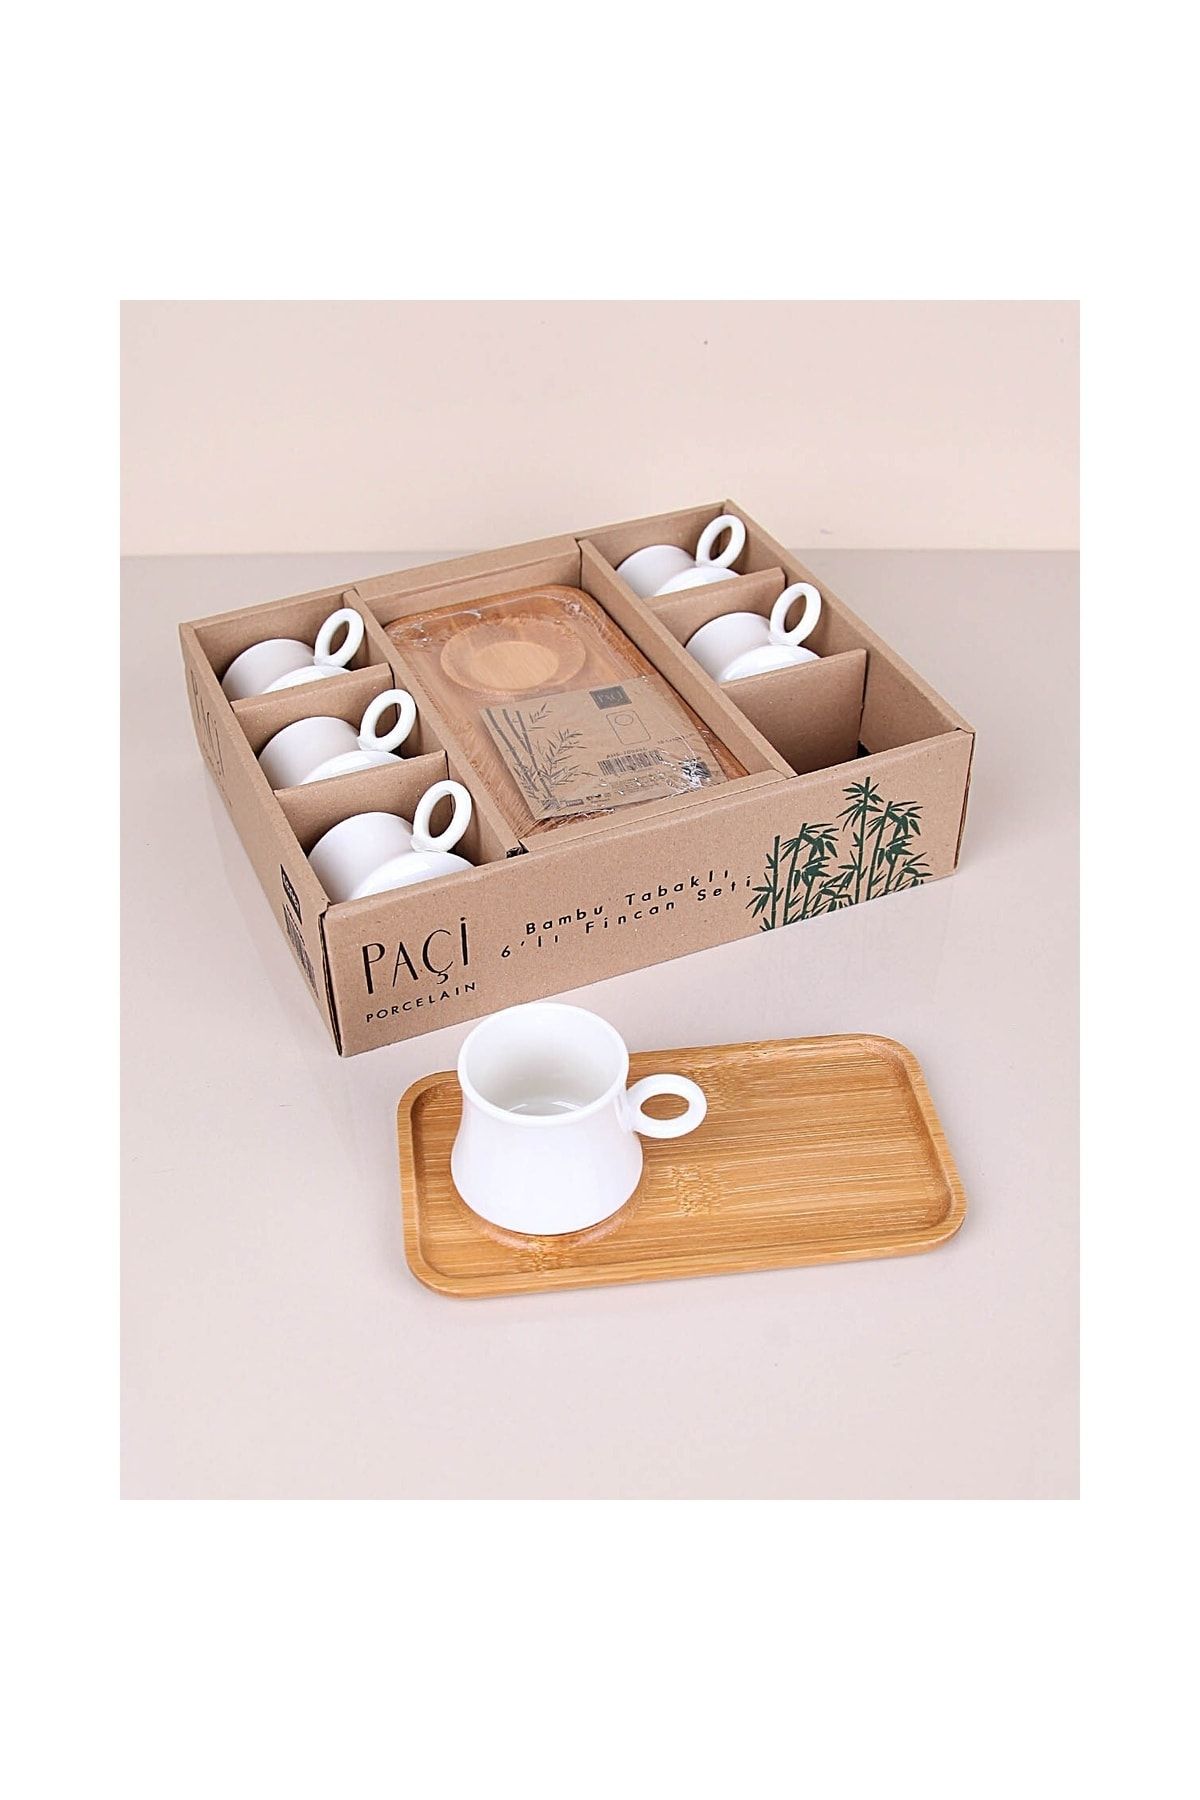 Paçi Porselen Bambu Tabaklı 6 Kişilik Kahve Fincan Takımı